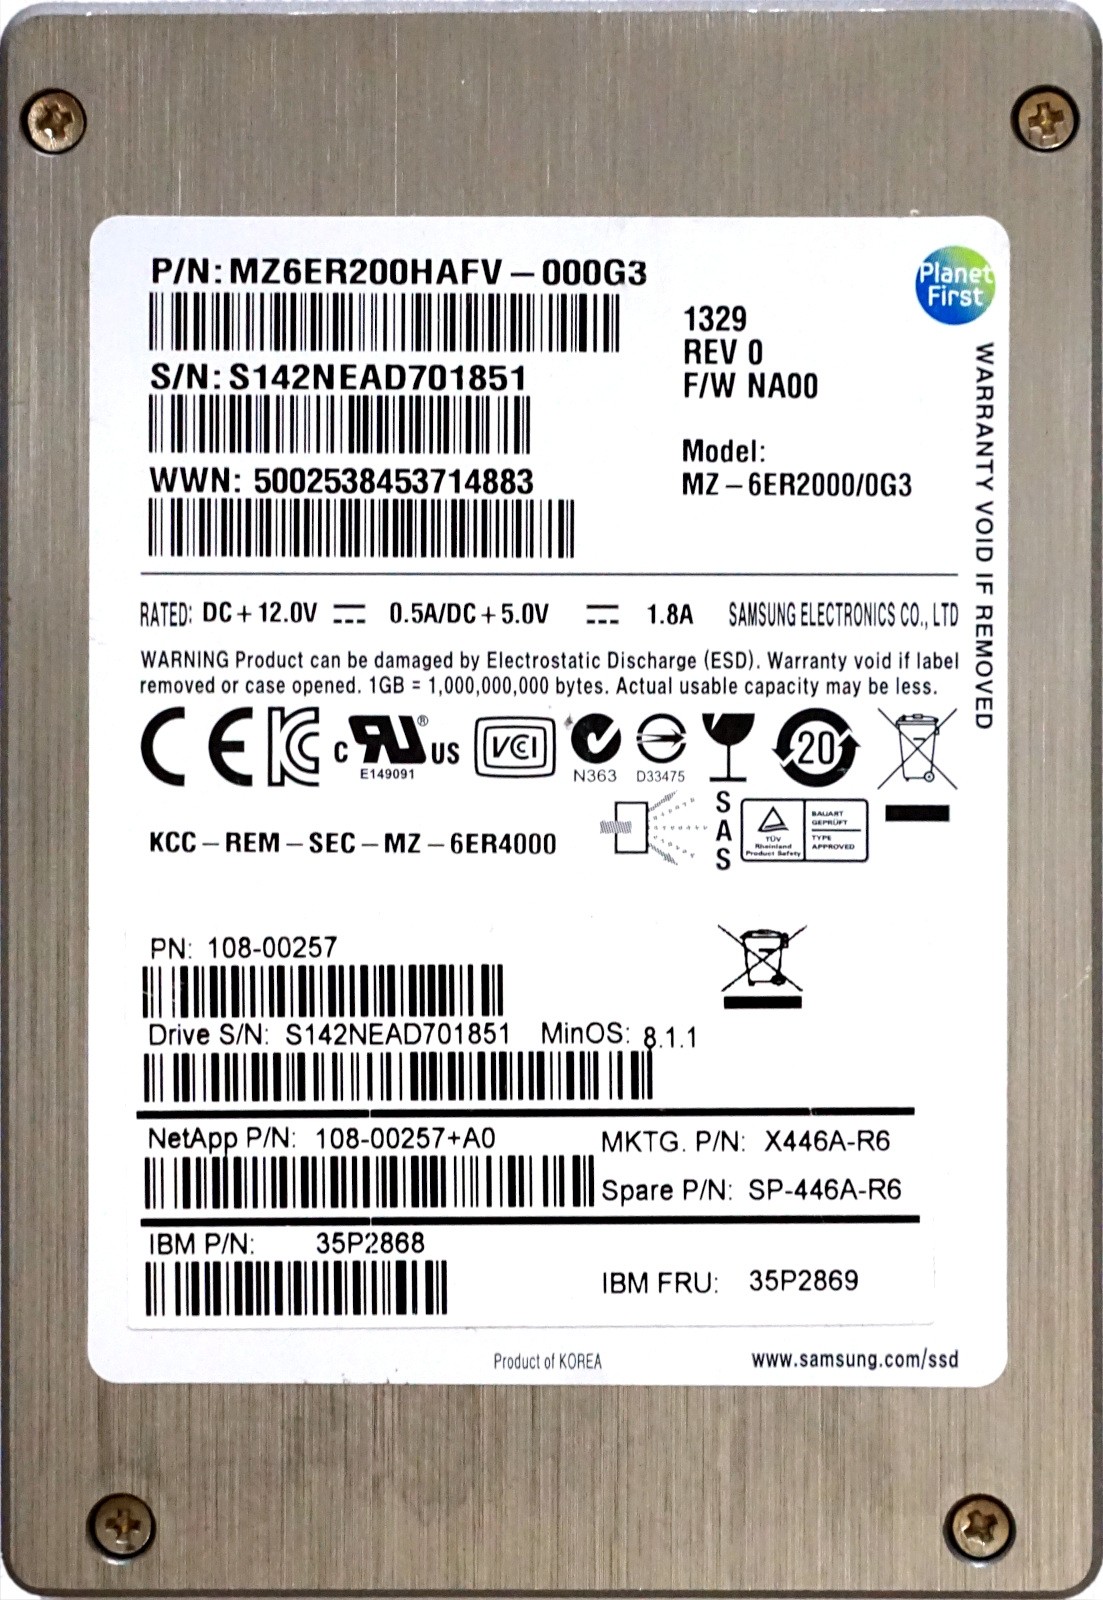 NetApp (108-00257+A0) 200GB Samsung SM1625 (2.5") SAS-2 6Gbps eMLC SSD